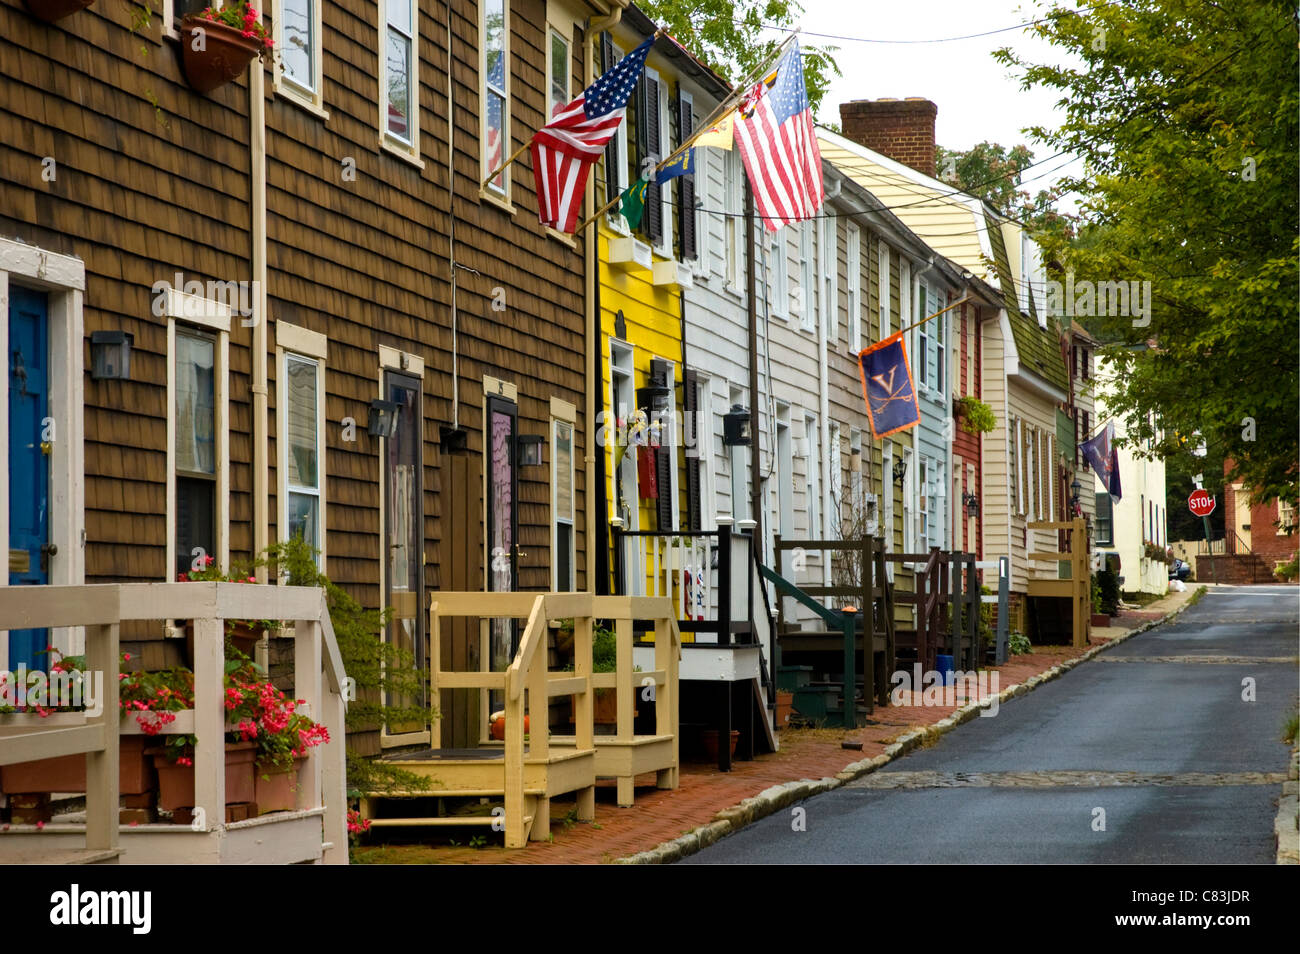 Bandierine americane onda portali della storica Annapolis case. Foto Stock